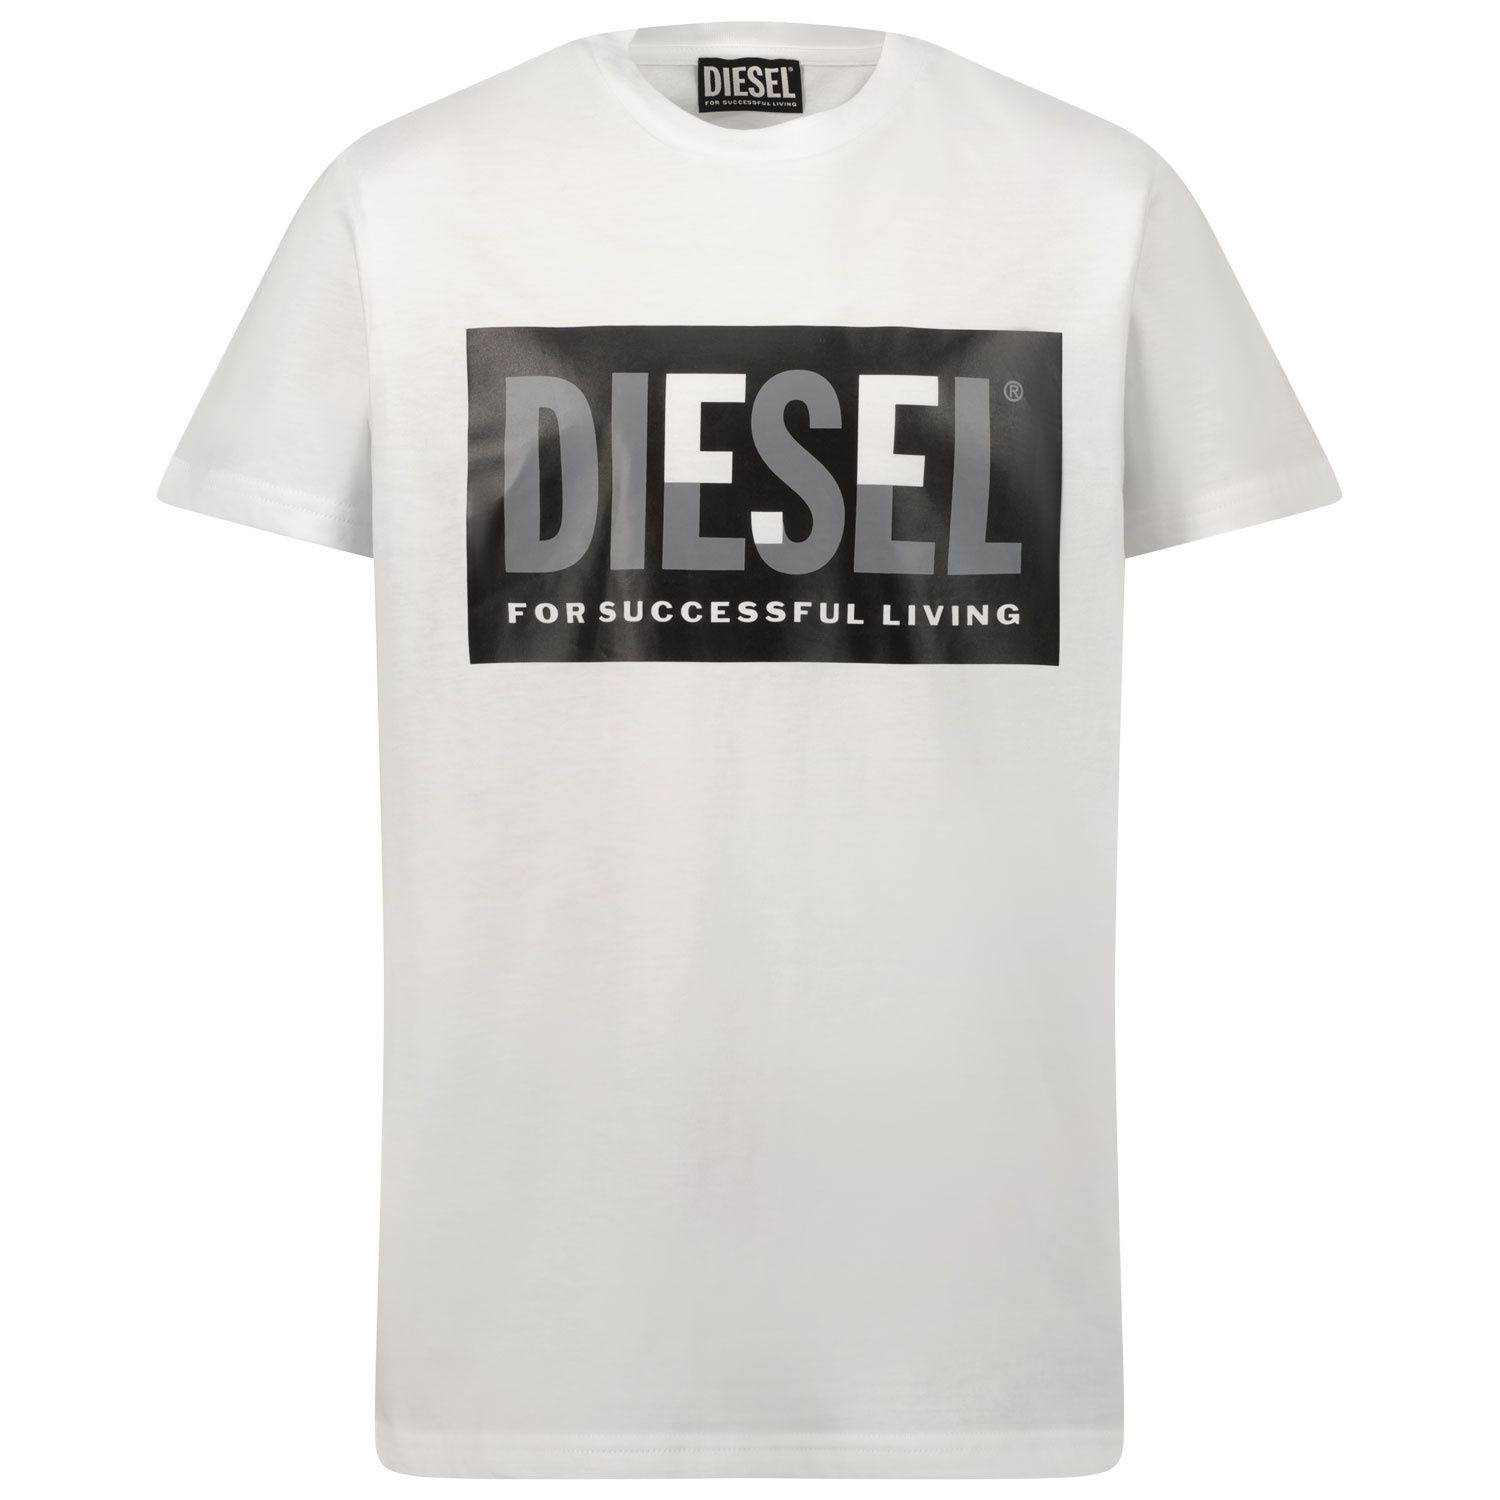 Afbeelding van Diesel J00581 kinder t-shirt wit